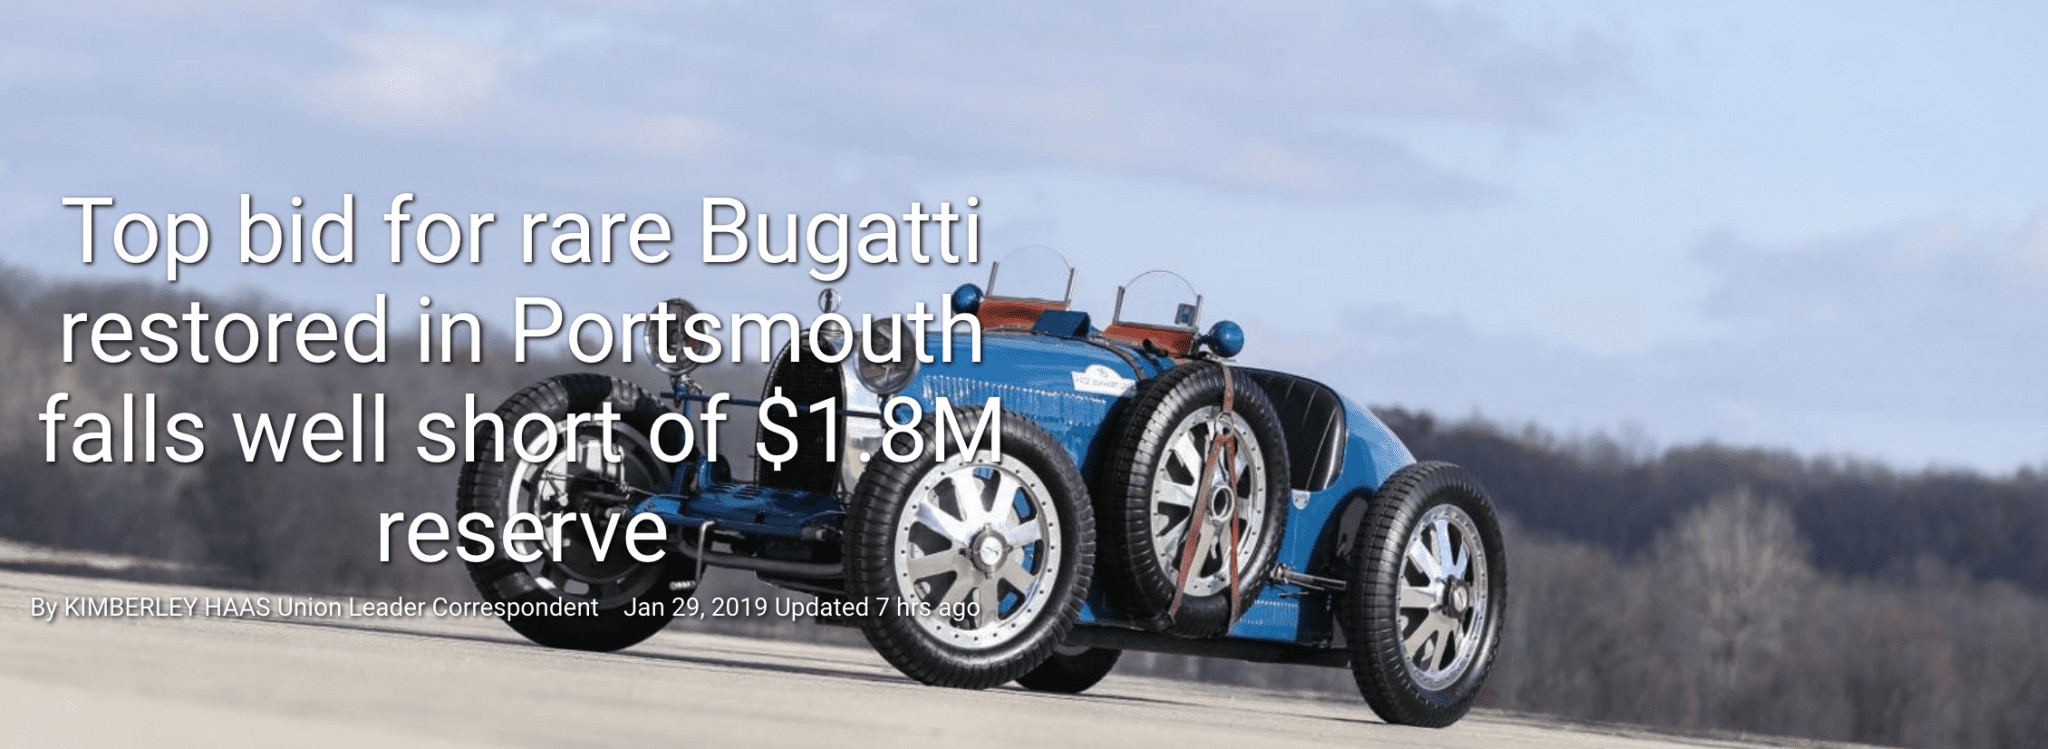 Bugatti article